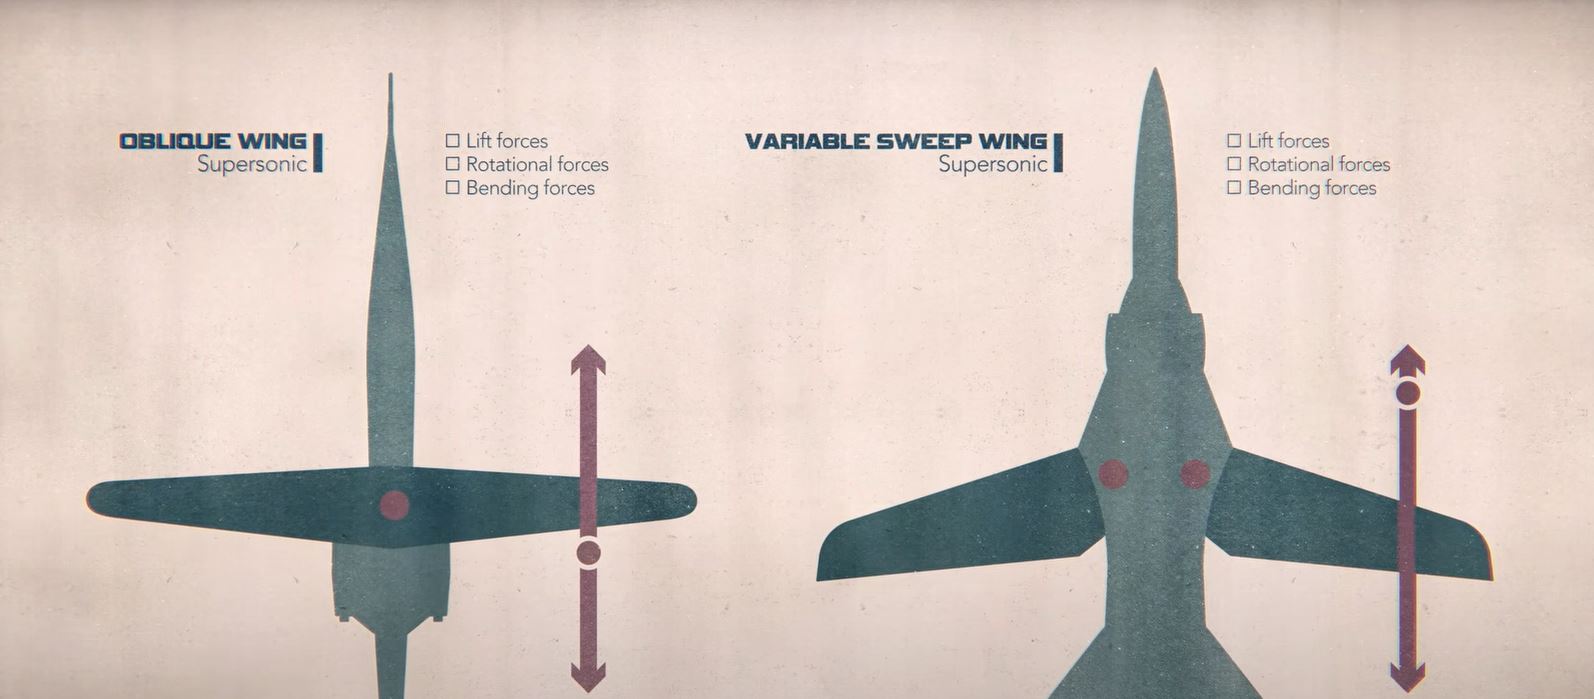 Das schräge Flügeldesign im Vergleich zum Standarddesign, das heute in Flugzeugen verwendet wird